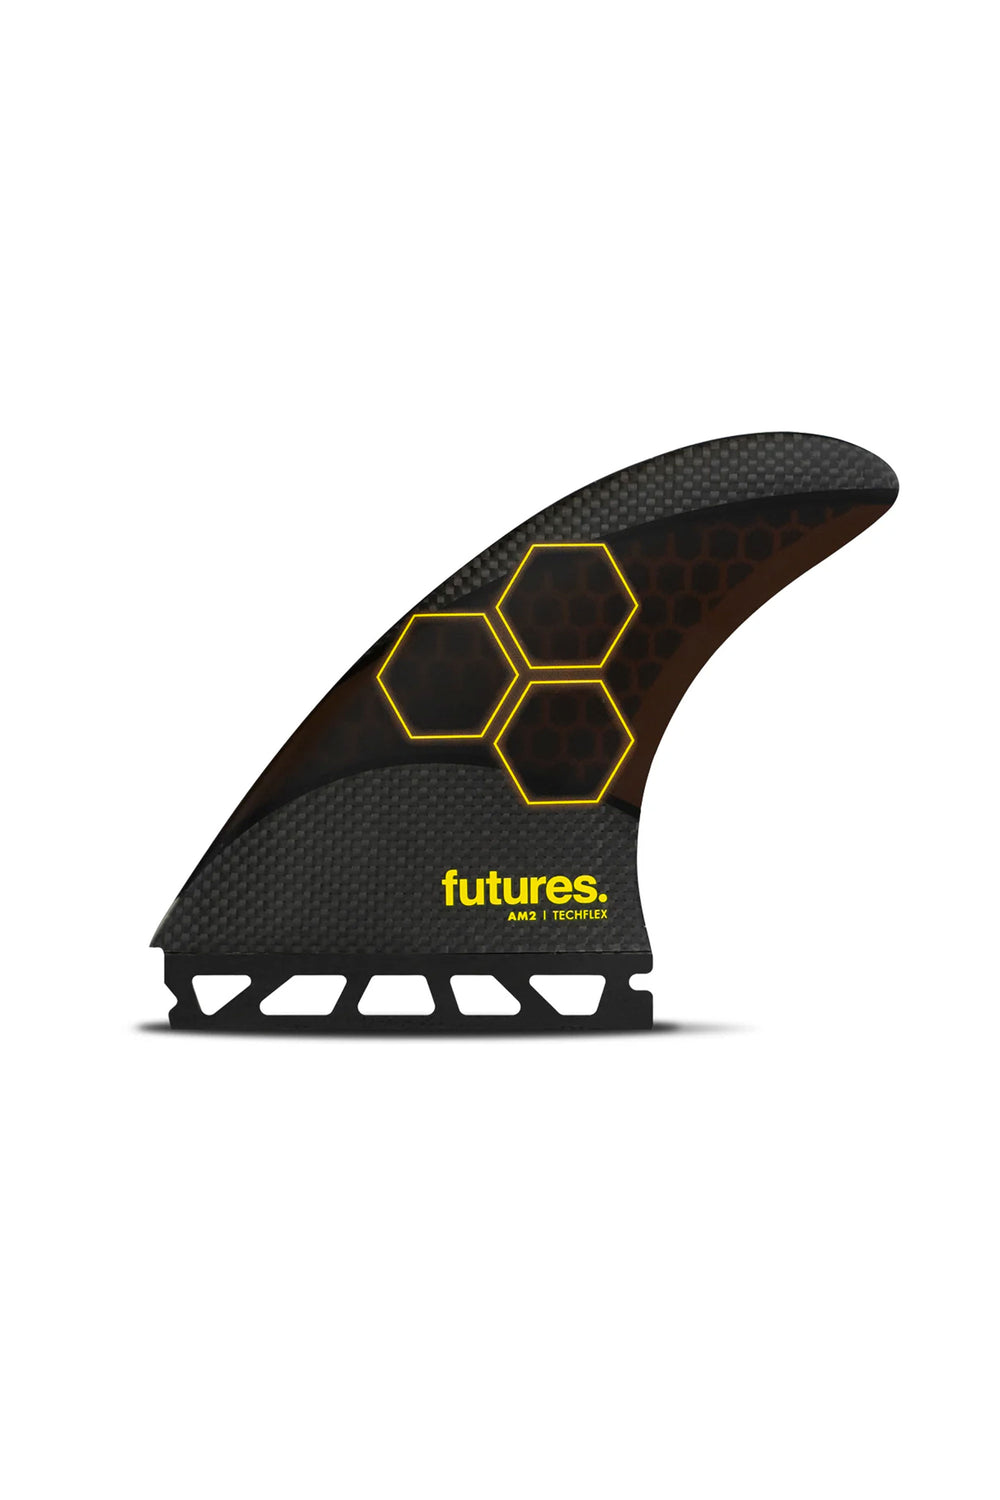 Pukas-Surf-Shop-futures-fins-am2-techflex-5fins